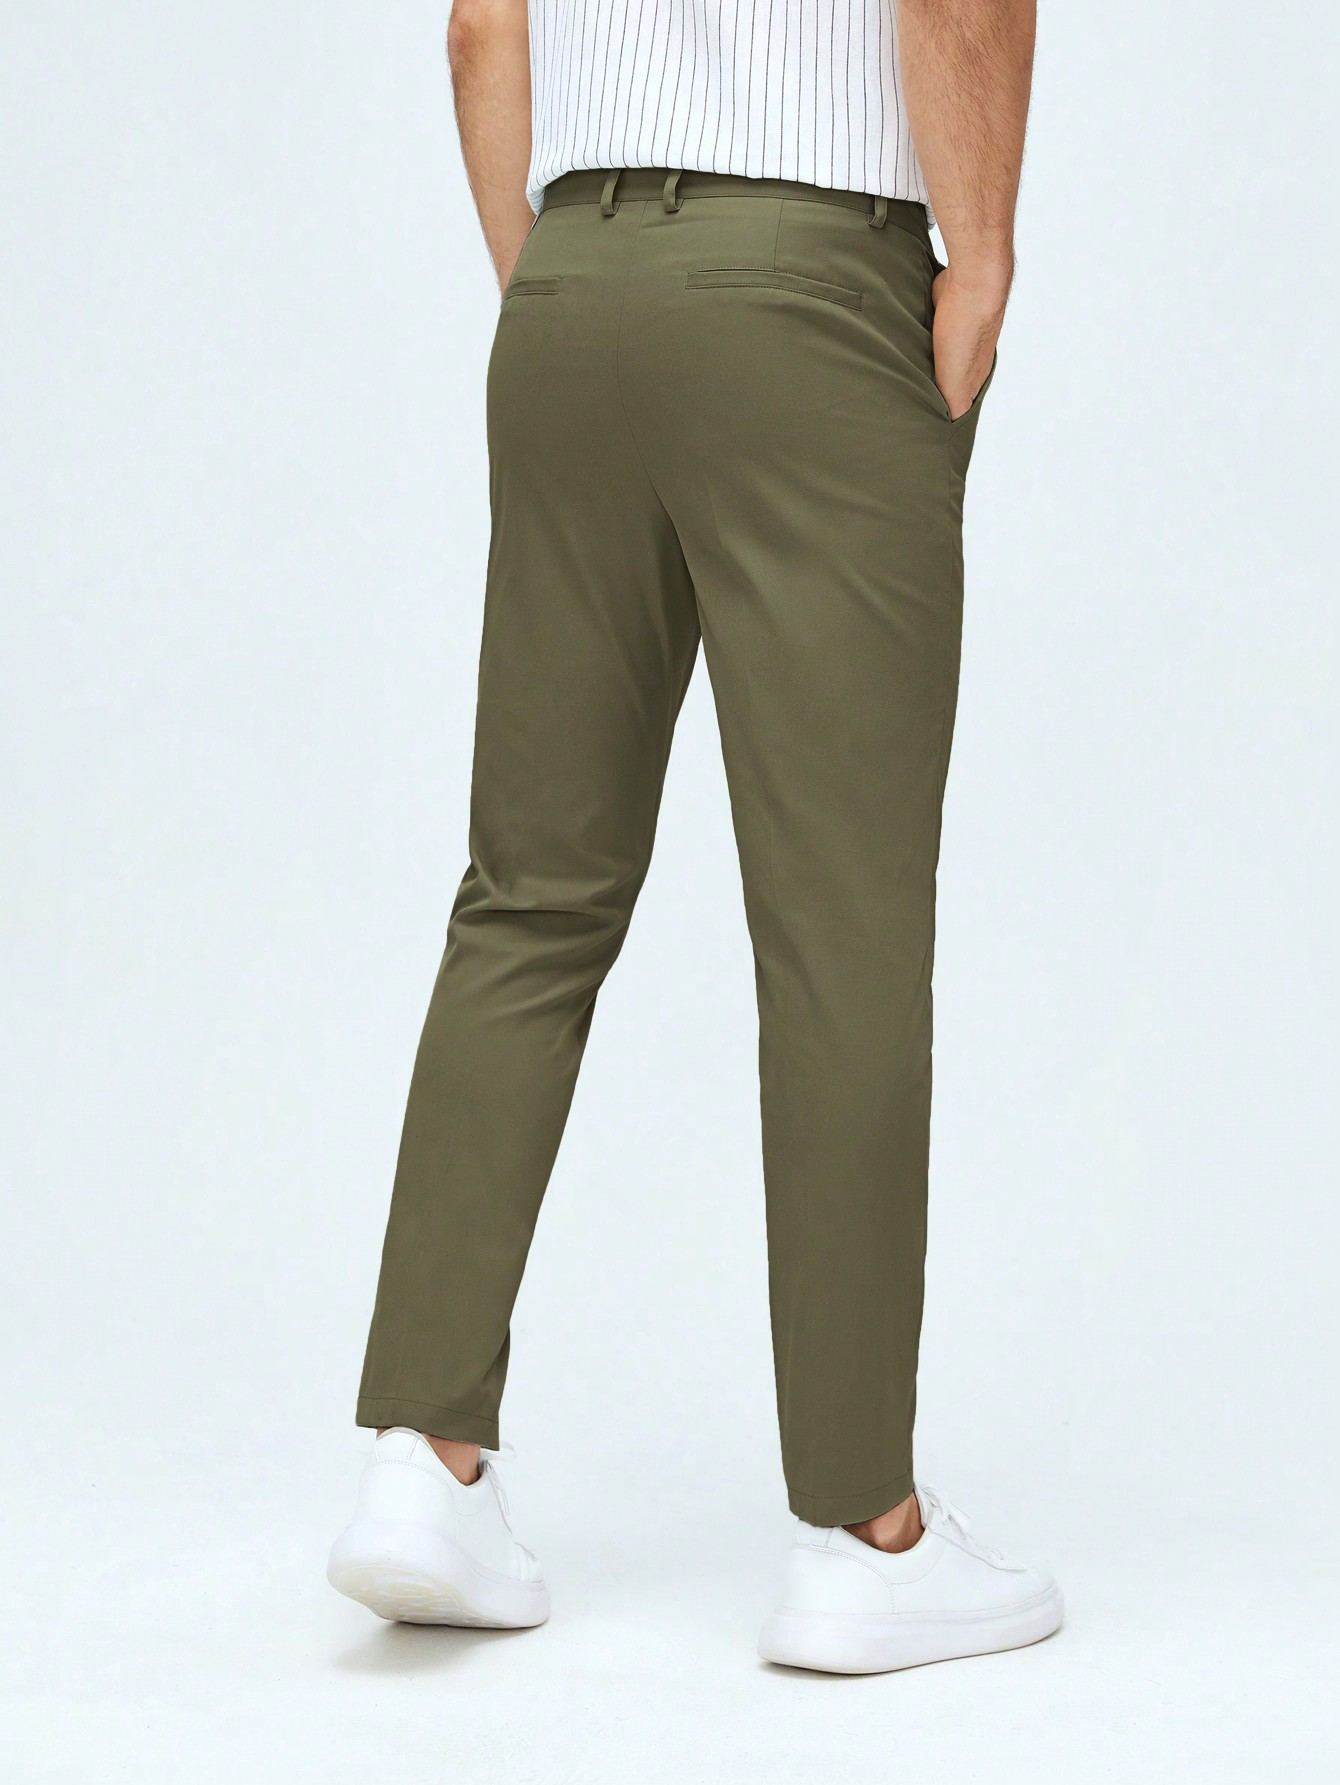 Мужские классические классические брюки из тканого материала с боковыми карманами Manfinity Mode, армейский зеленый брюки классические 42 размер